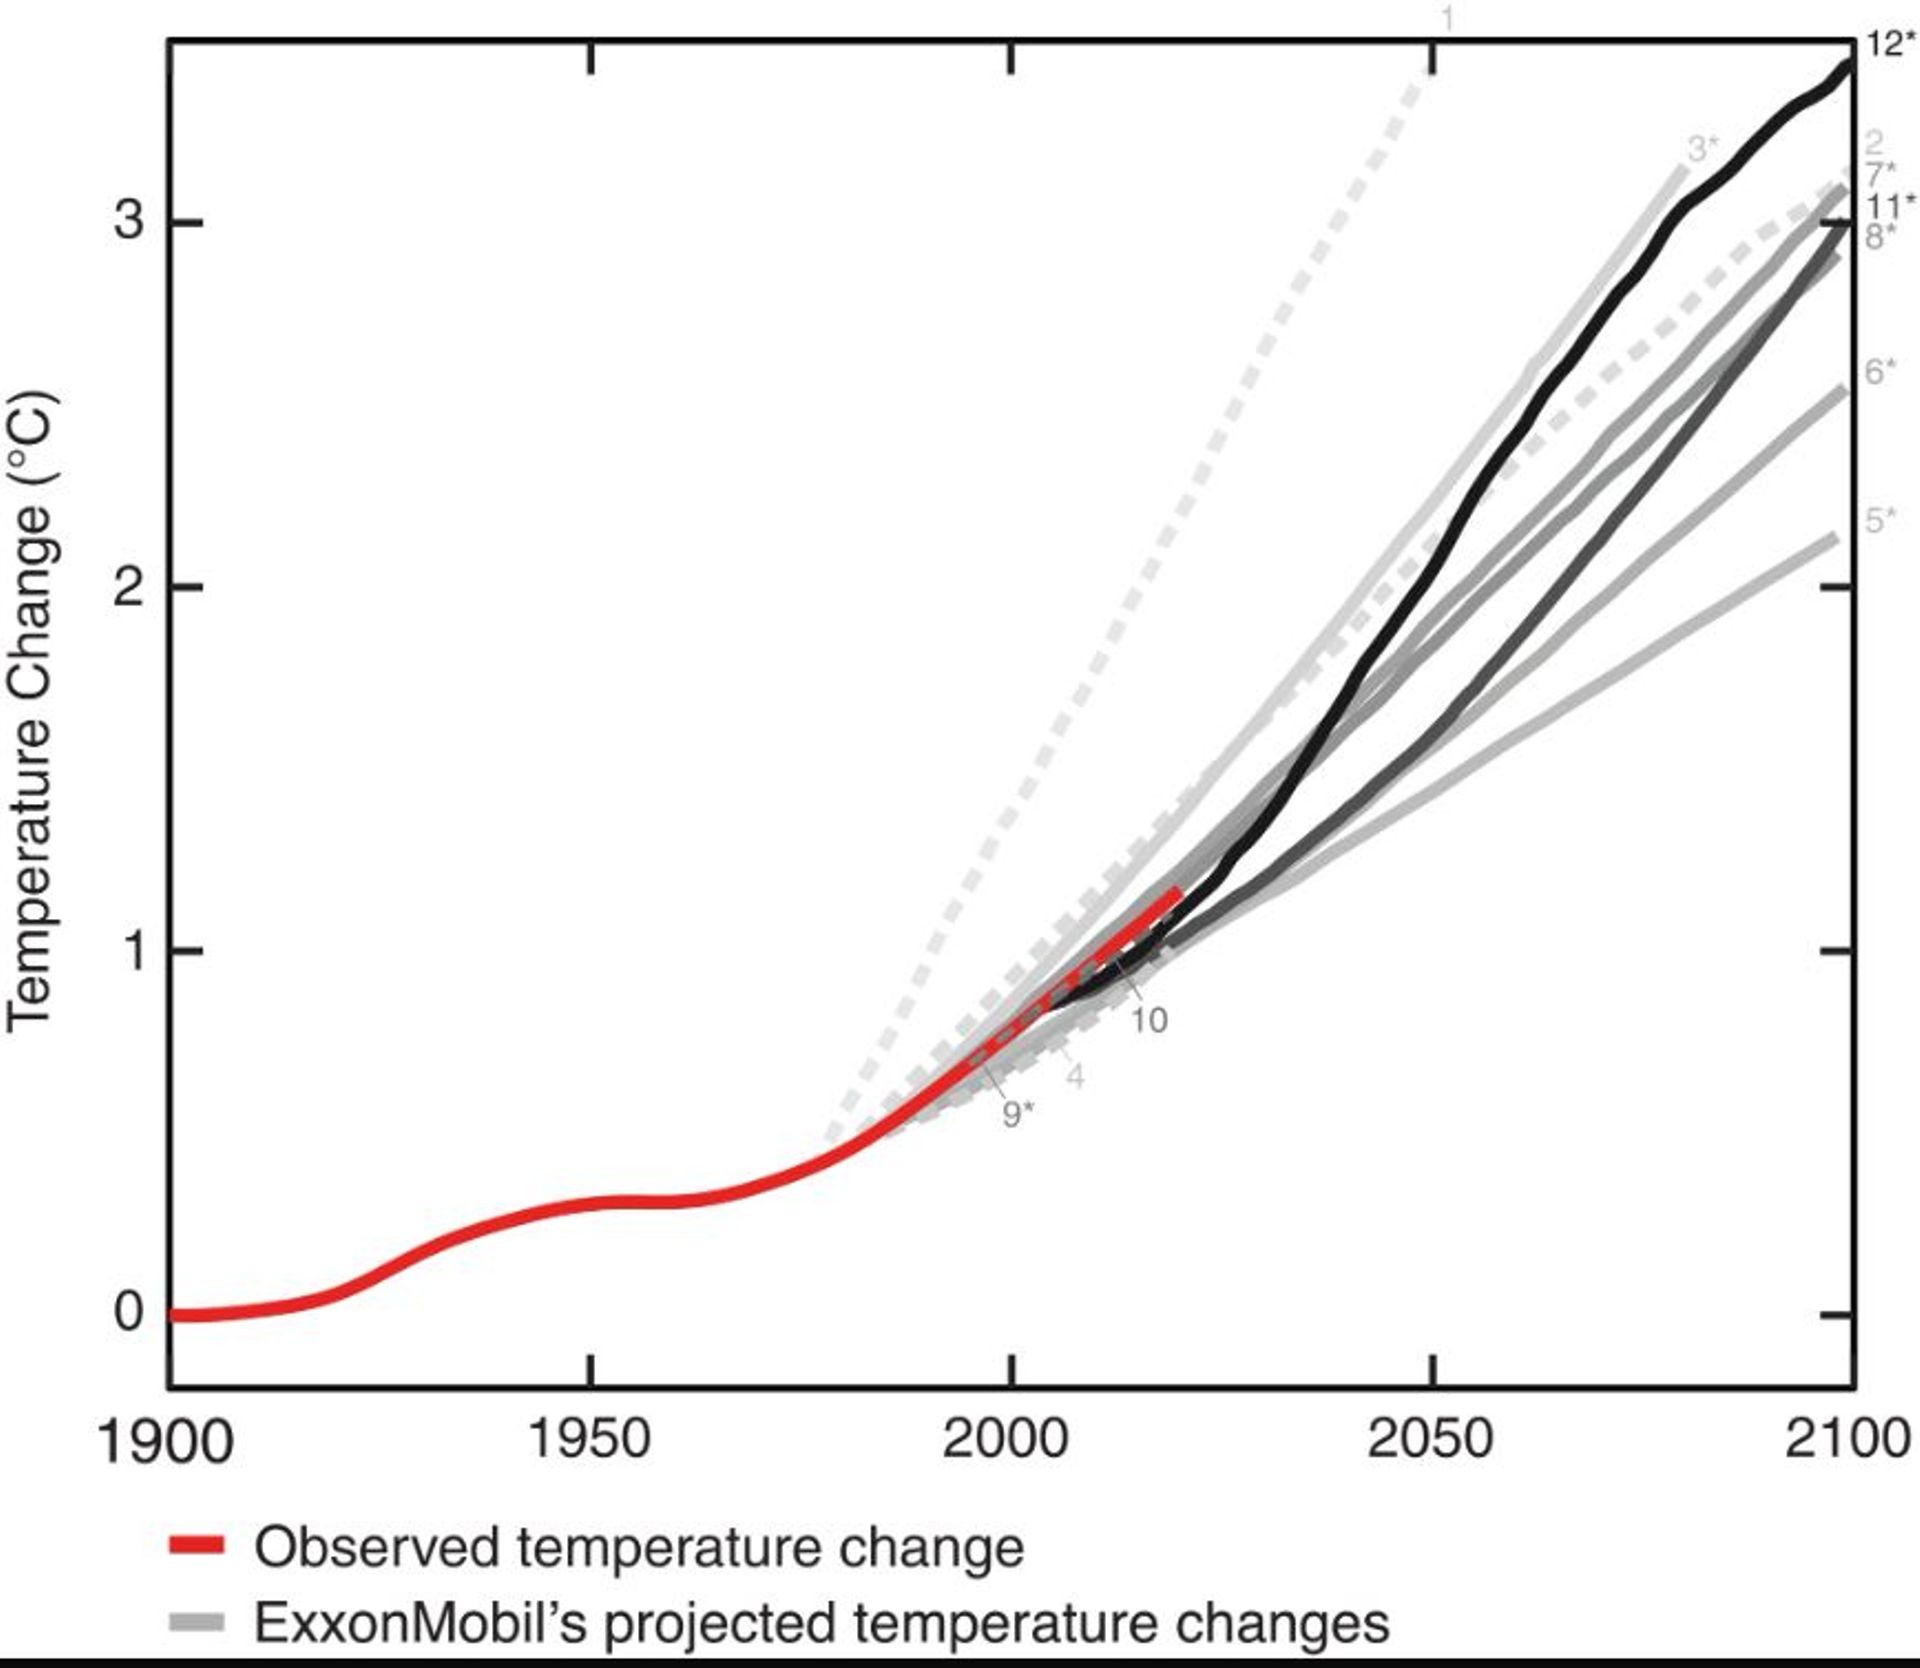 En rouge : le réchauffement climatique réellement observé.
En gris, les projections du réchauffement climatique selon les scientifiques d’Exxonmonil